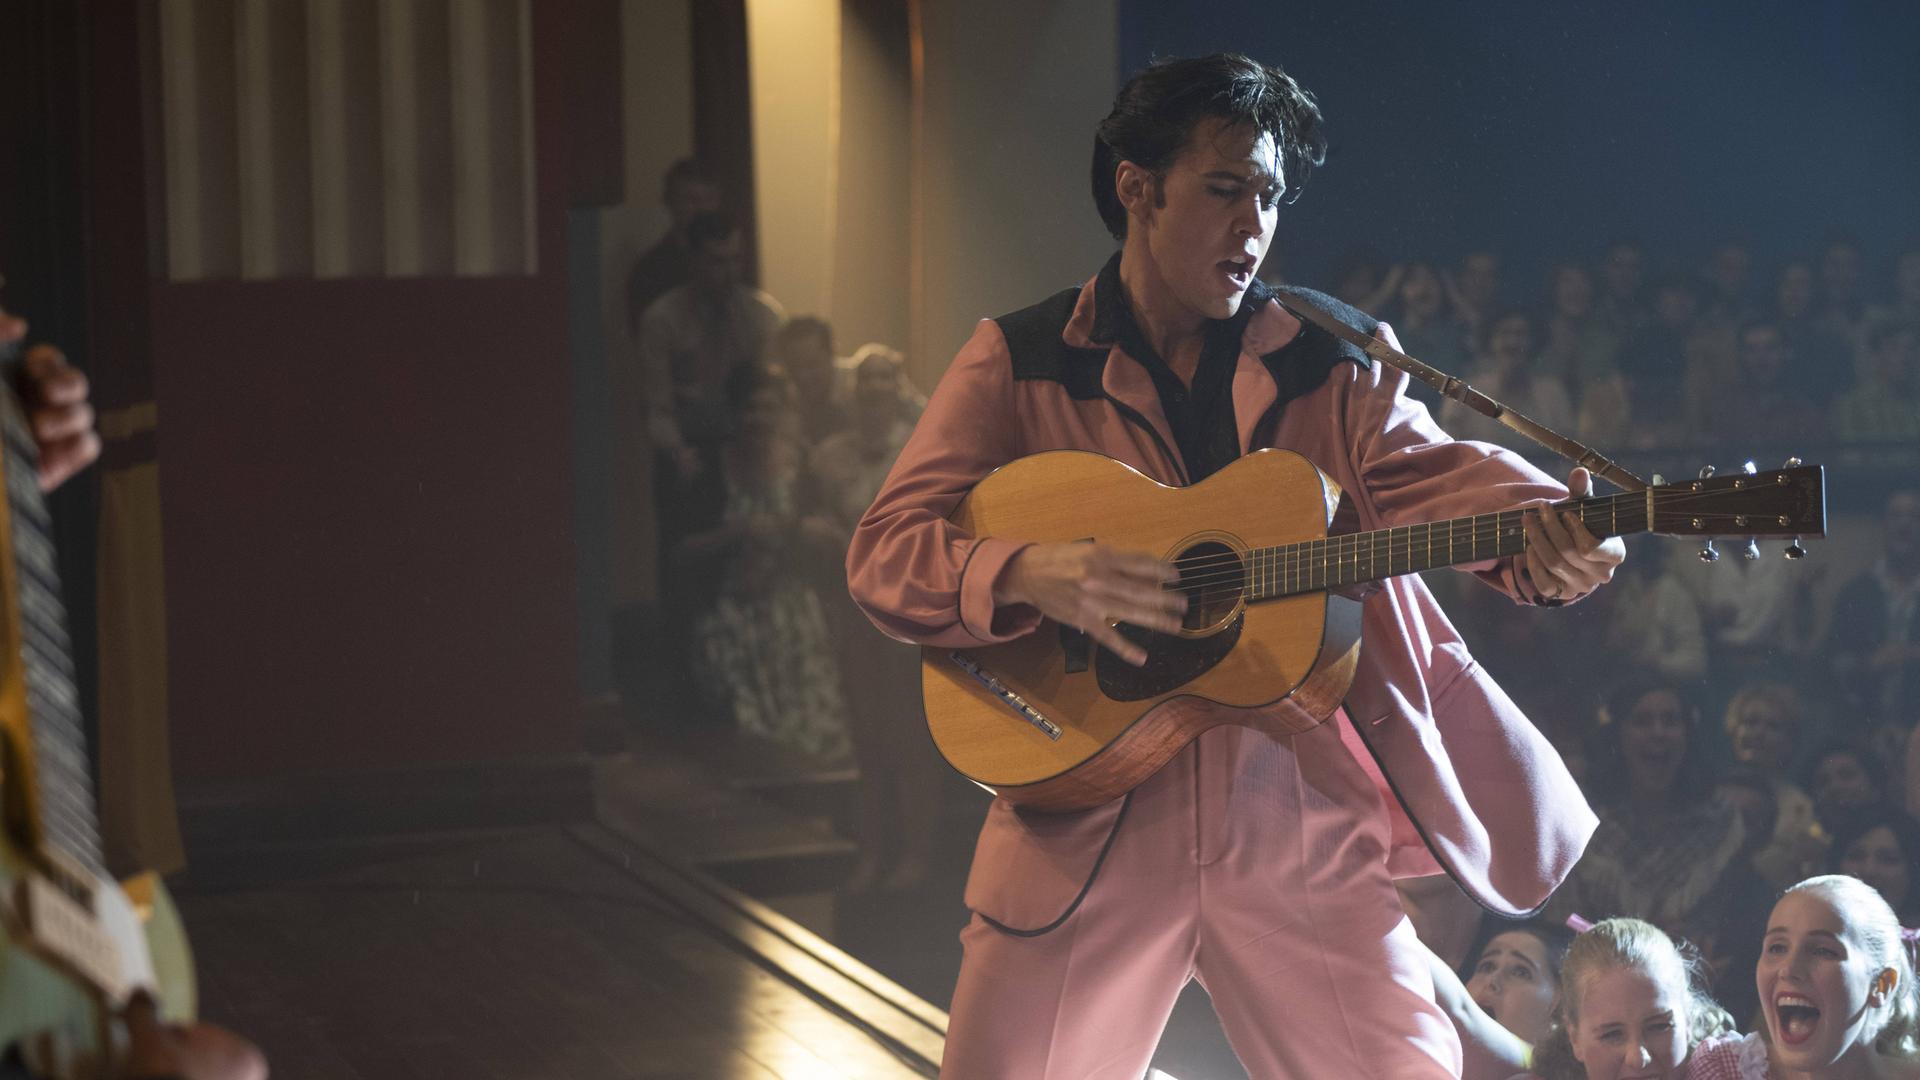 Szenenfoto aus dem Film "Elvis" von Baz Luhrmann: Schauspieler Austin Butler steht als Elvis Presley in einer Filmszene im rosa Anzug auf der Bühne, singt und spielt Gitarre. Im Hintergrund schreiende Frauen im Publikum.